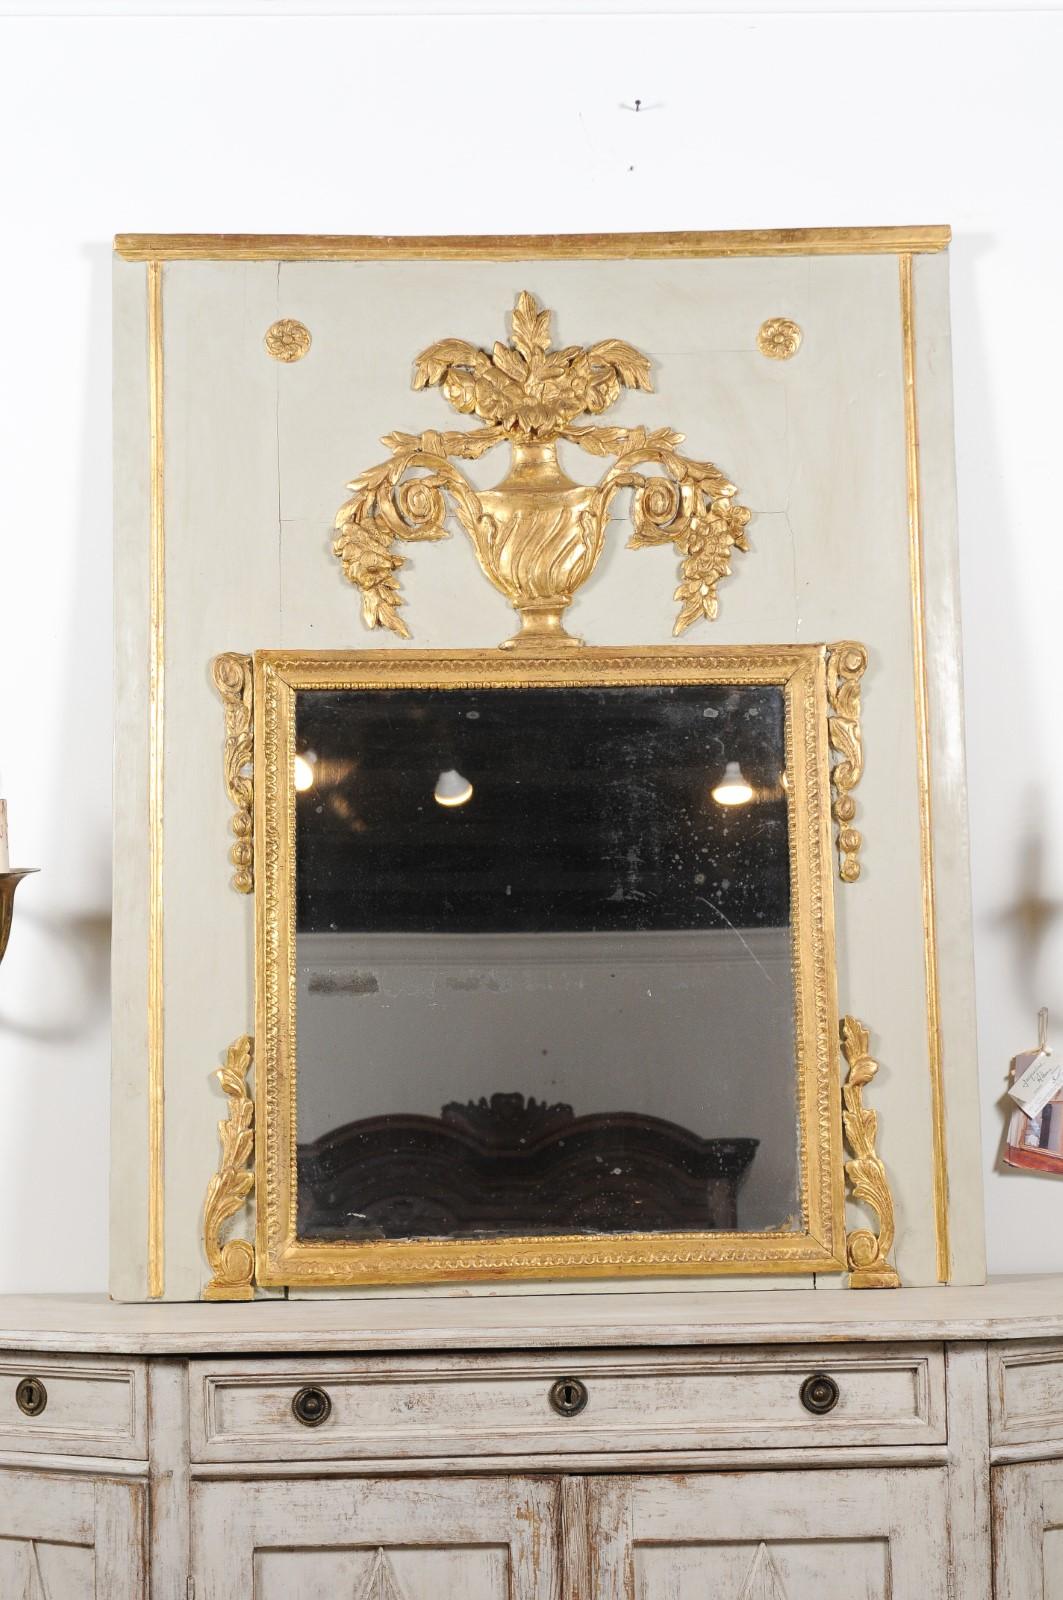 Ein französischer, bemalter und vergoldeter Trumeau-Spiegel aus dem 18. Jahrhundert, mit Urne, Blumen, Blattwerk und Voluten. Dieser Trumeau-Spiegel wurde im dritten Viertel des 18. Jahrhunderts in Frankreich hergestellt und weist die stilistischen